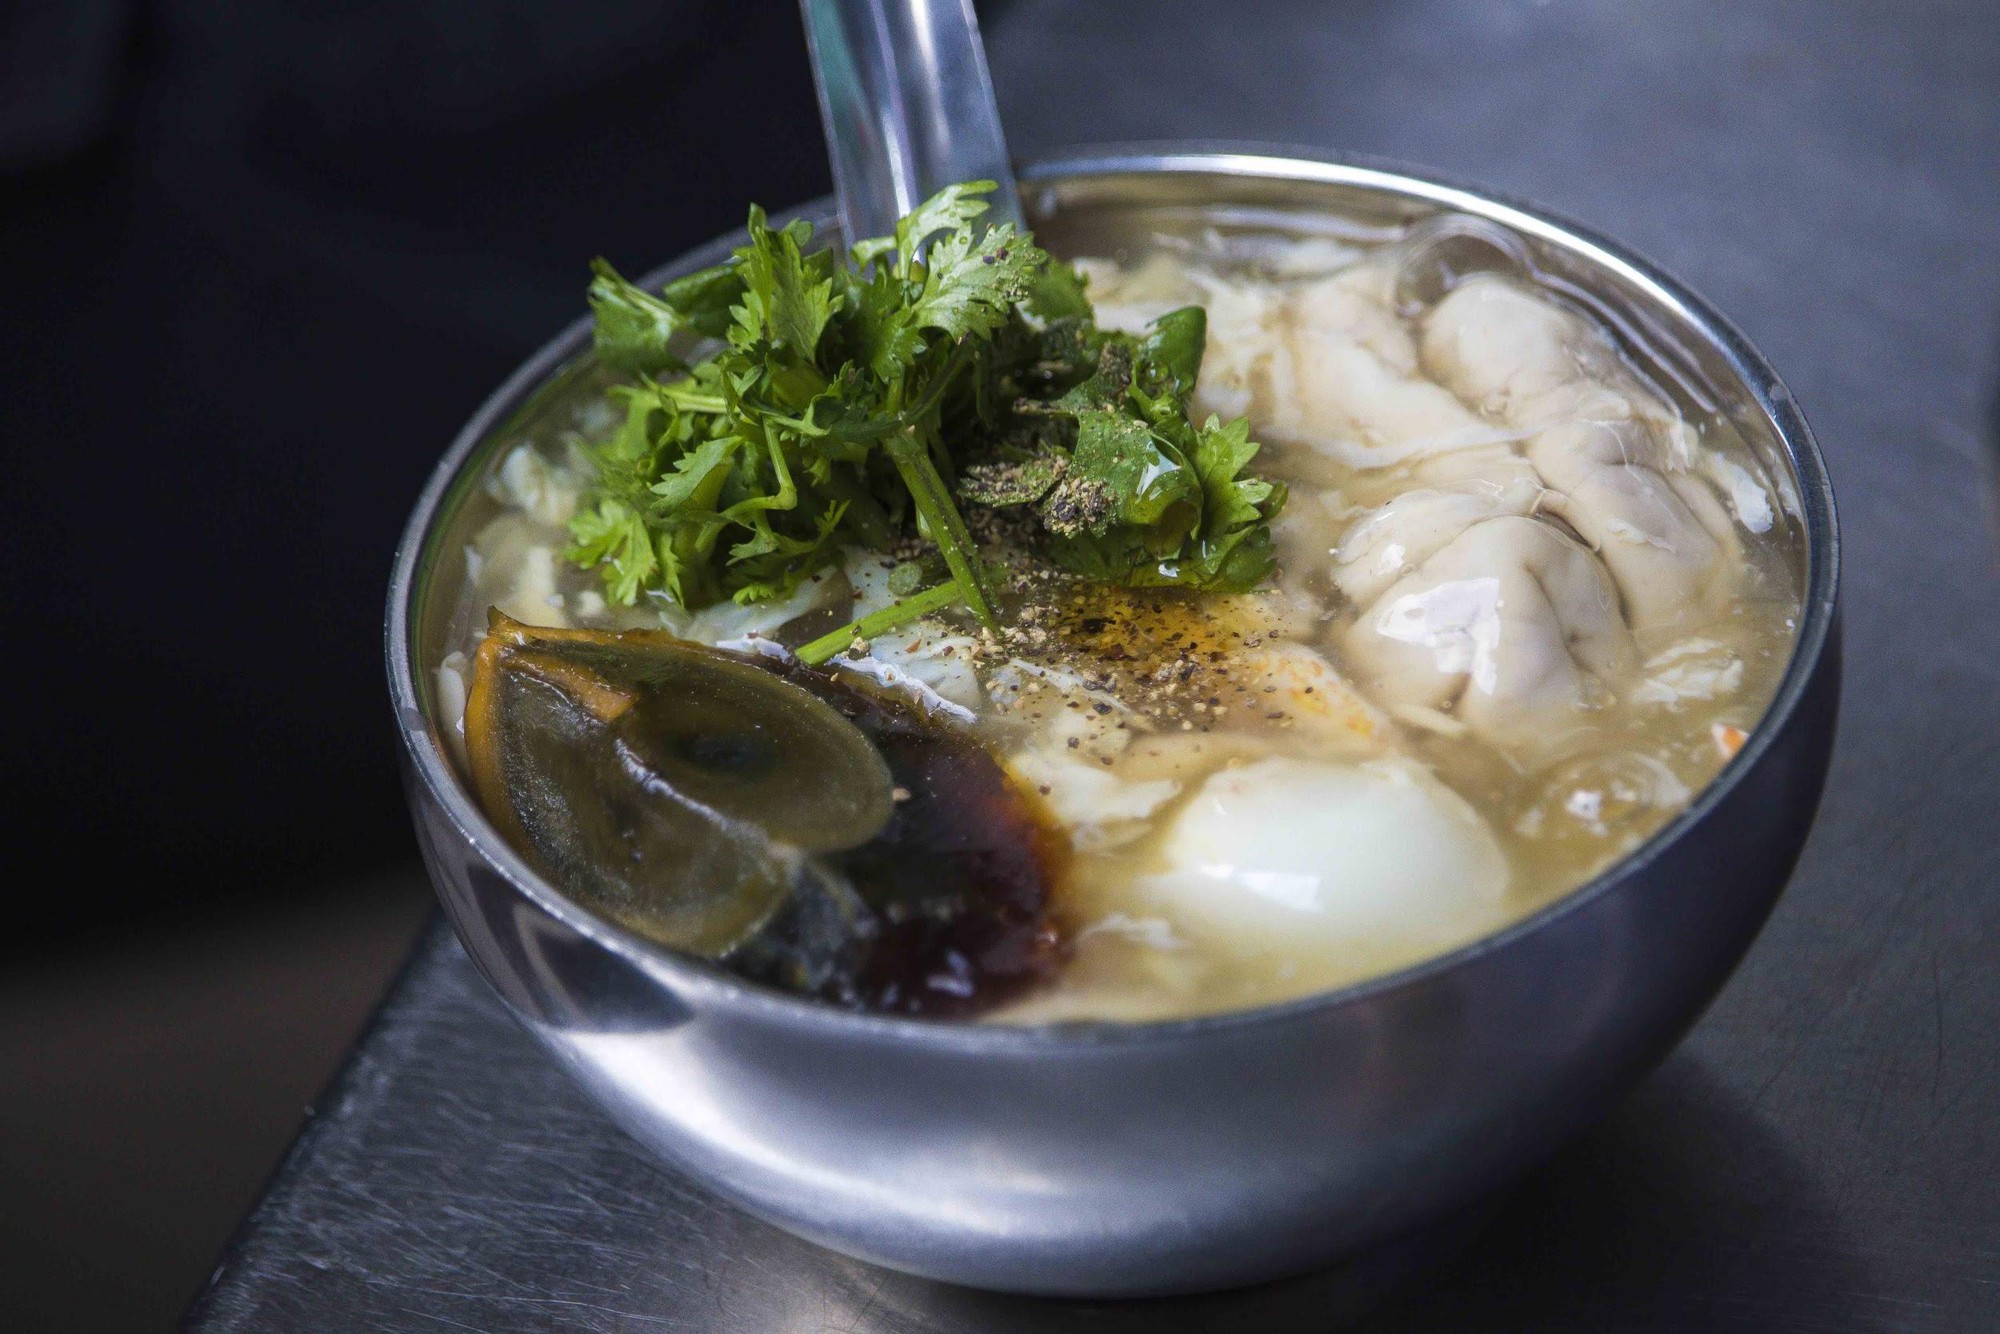 Thuỵ Điển thành lập bảo tàng: Những loại thức ăn kinh dị nhất thế giới, có tới 5 món quen ở Việt Nam được trưng bày-5